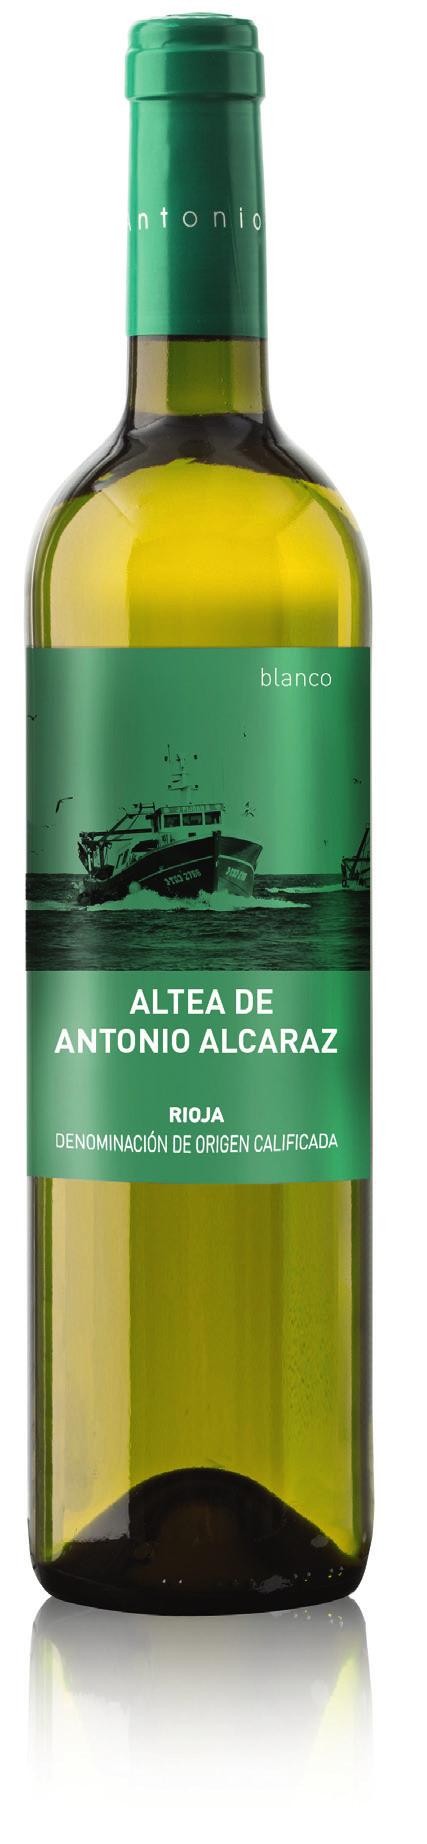 ALTEA DE ANTONIO ALCARAZ BLANCO VINO JOVEN 60% Viura, 40%